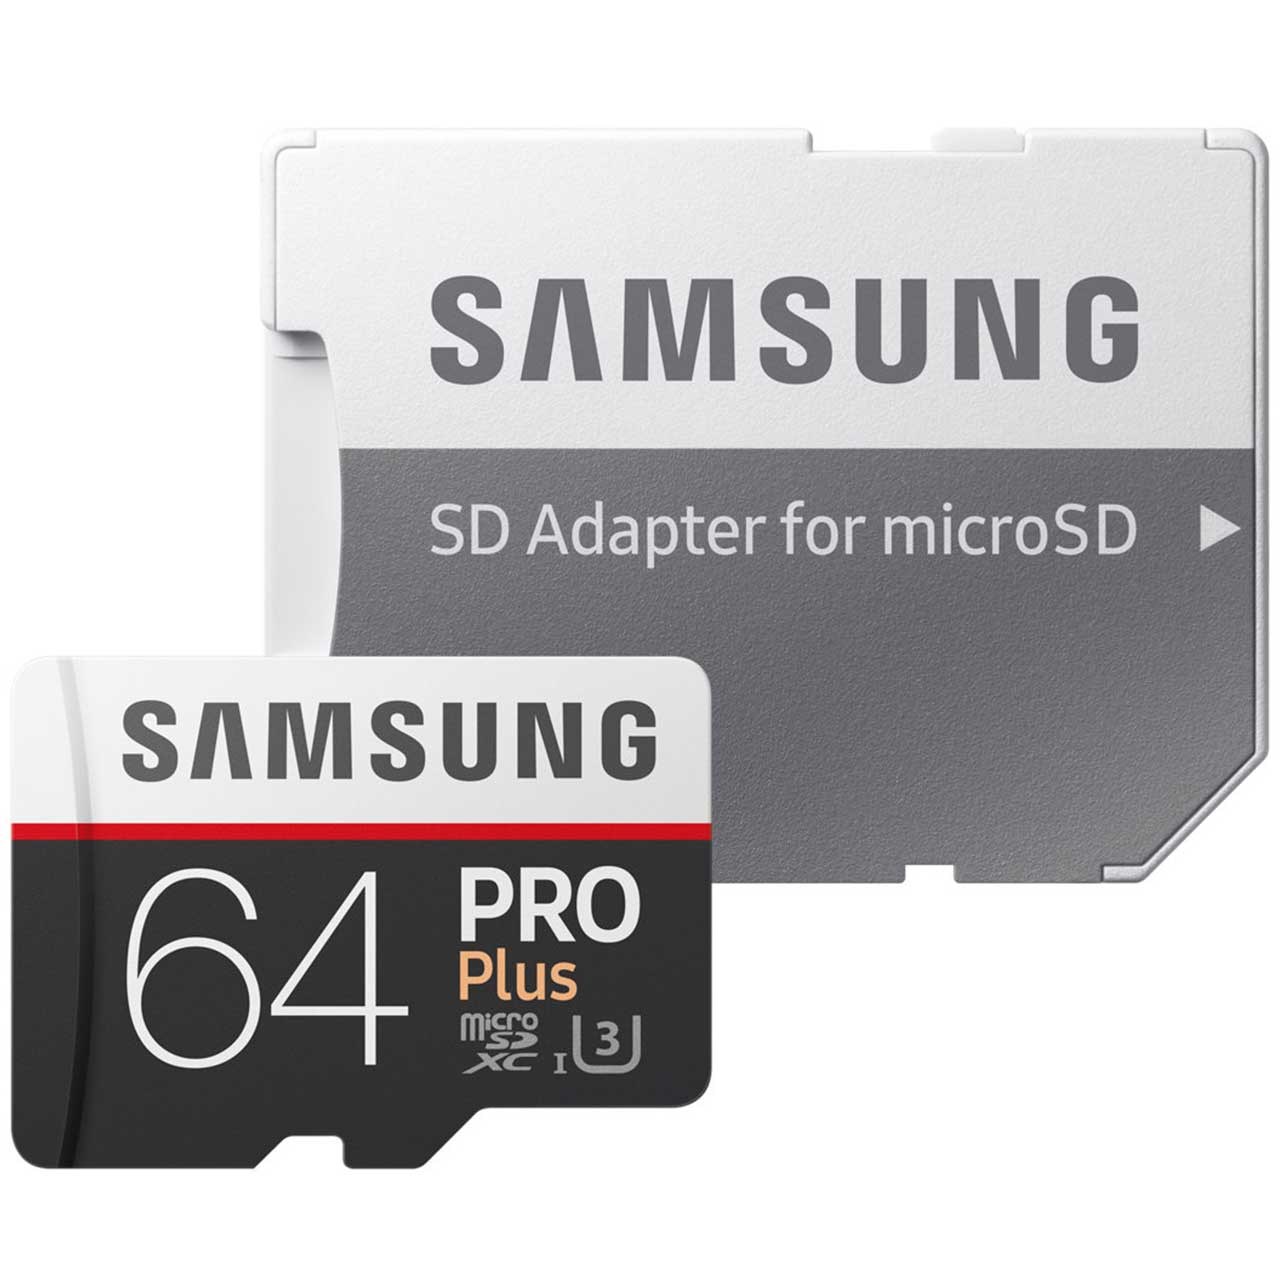 کارت حافظه microSDXC سامسونگ مدل Pro Plus کلاس 10 استاندارد UHS-I U3 سرعت 100MBps همراه با آداپتور SD ظرفیت 64 گیگابایت